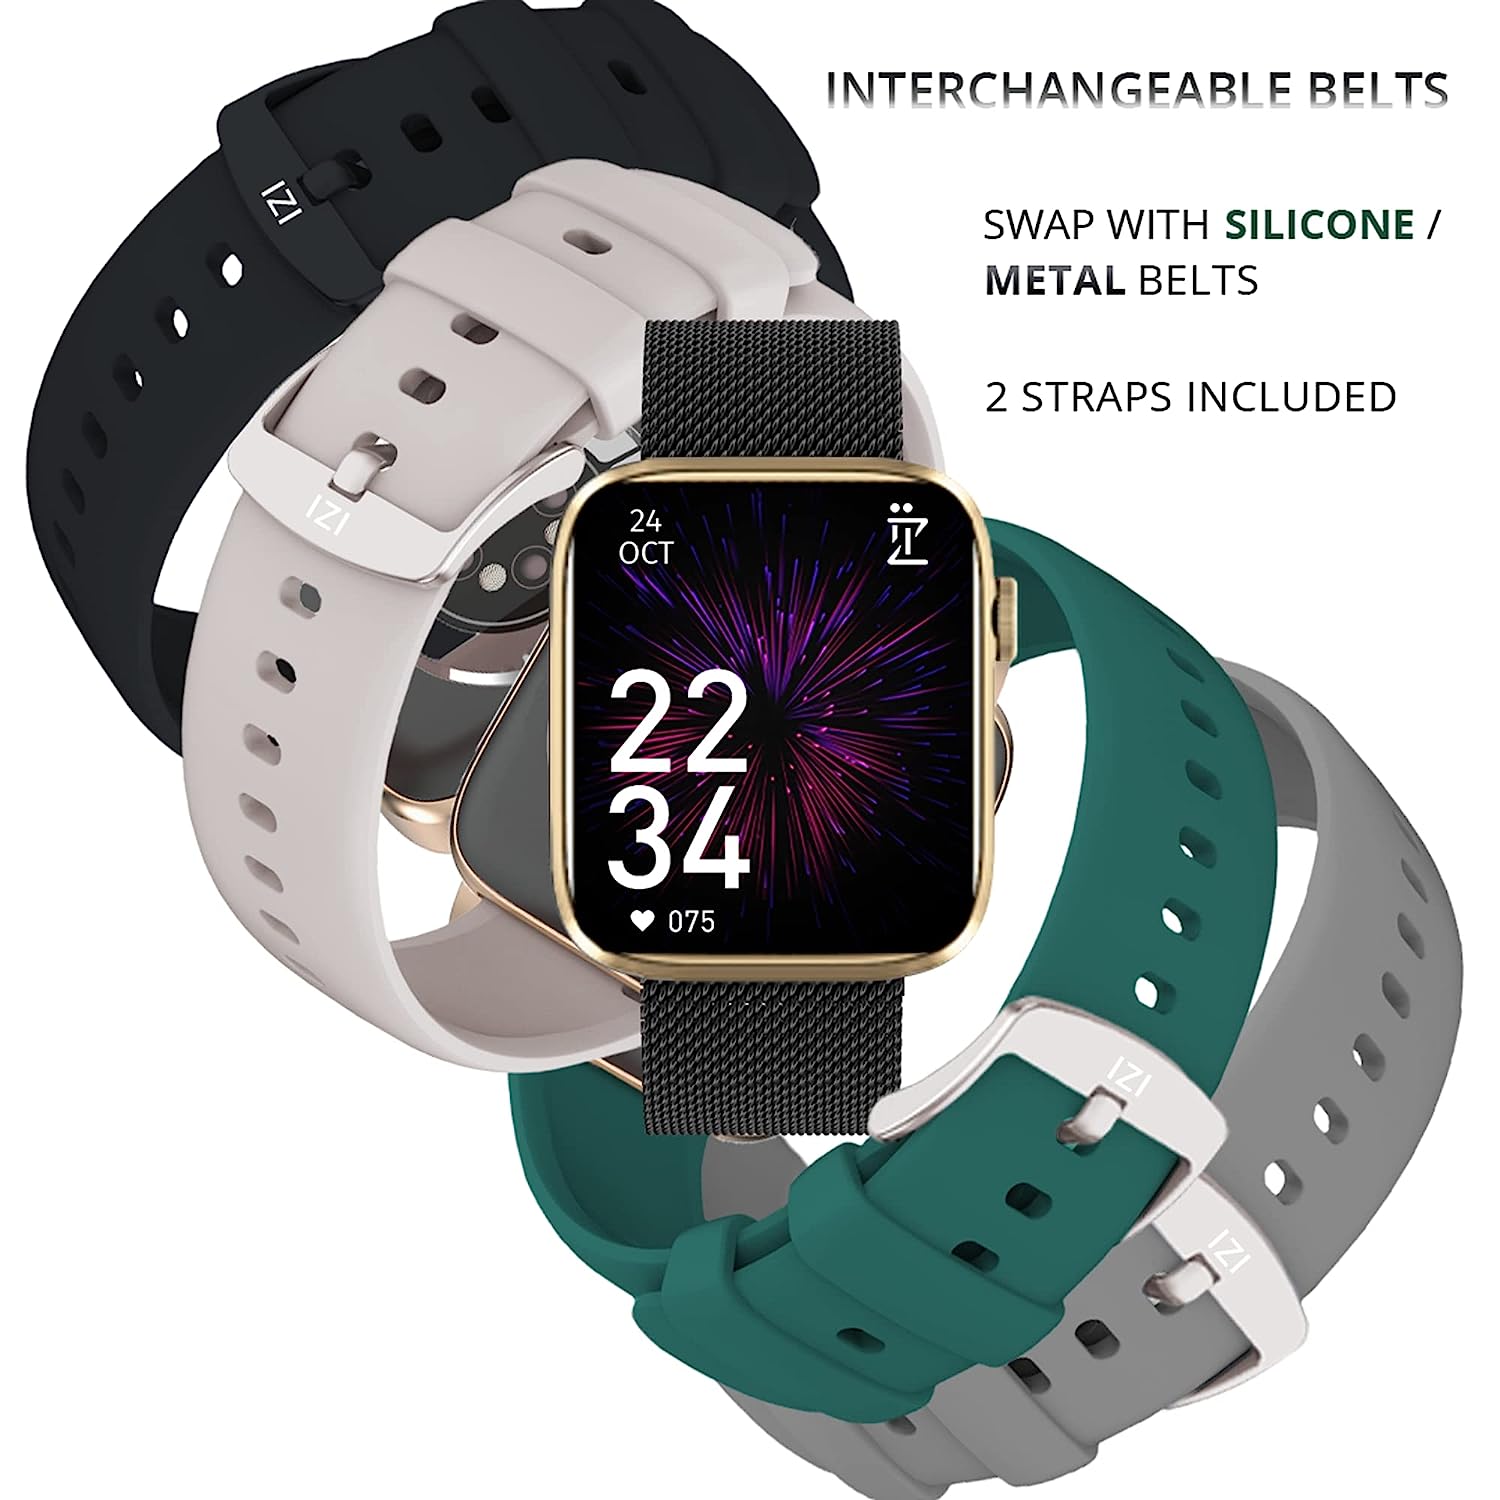  Smart Watch Interchangeable Belts